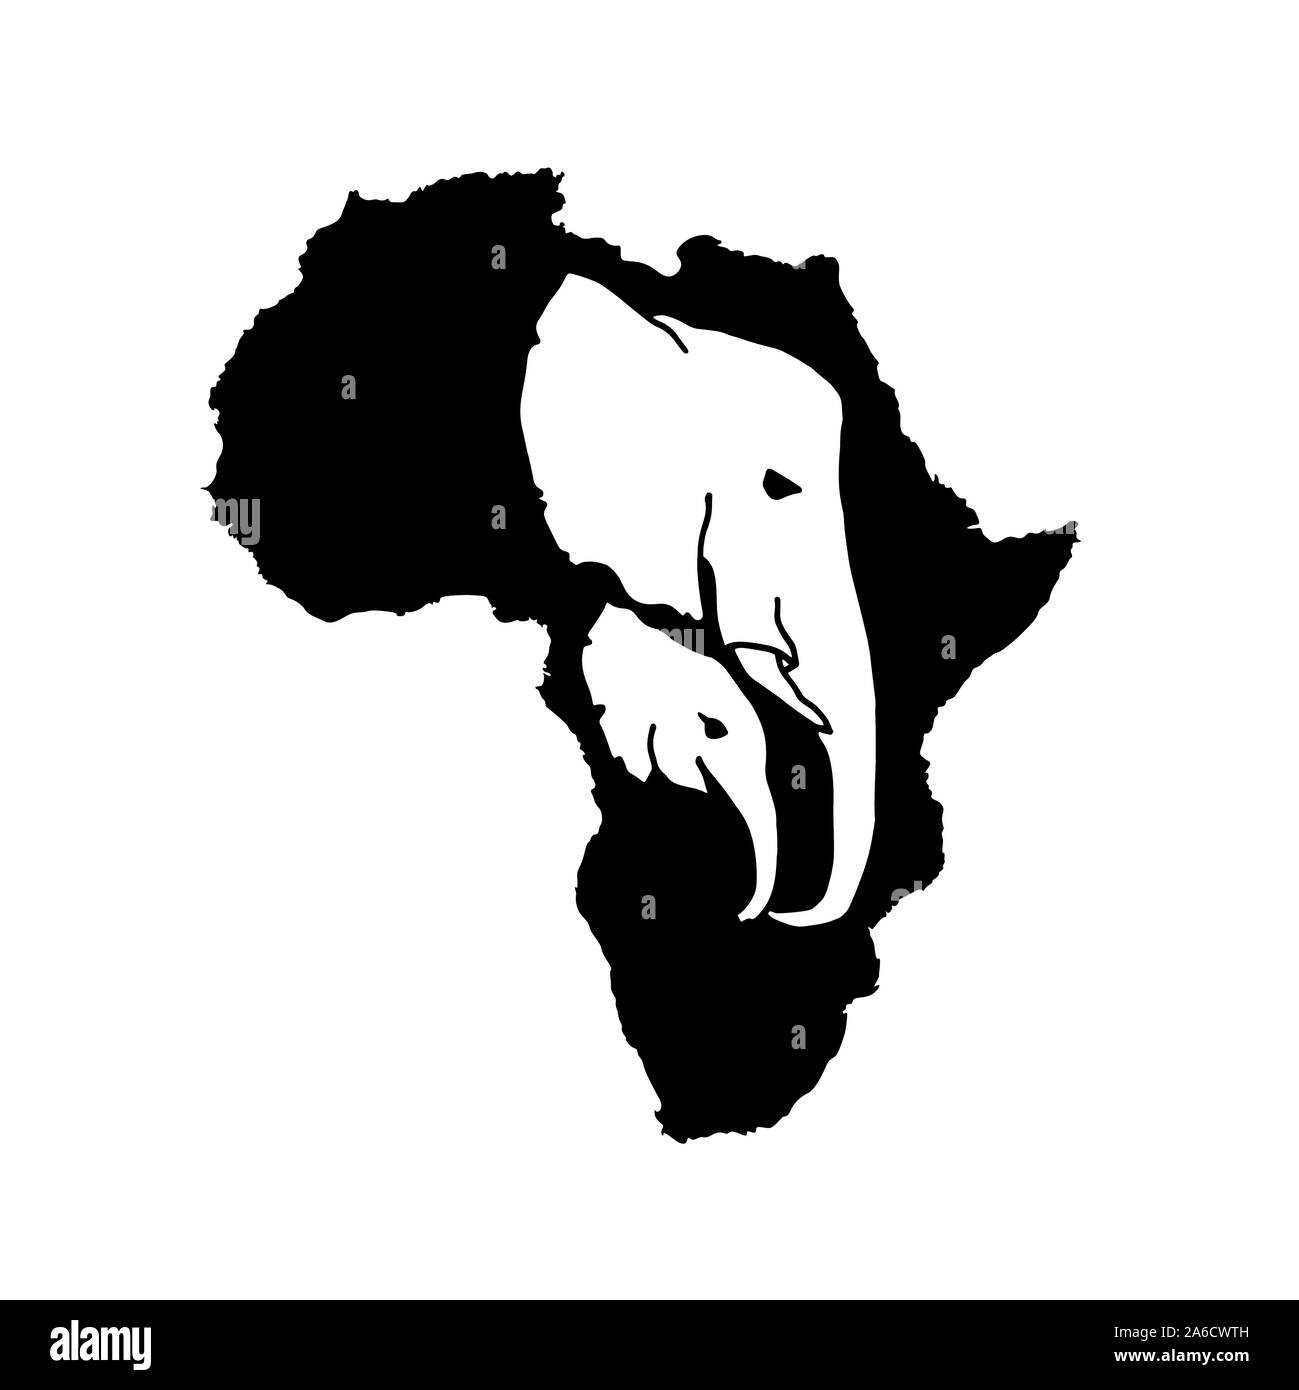 Silhouette vecteur d'Afrique noire avec deux tête d'éléphant blanc à l'intérieur de la silhouette. Mère et bébé éléphant d'Afrique de l'incide head silhouette Illustration de Vecteur